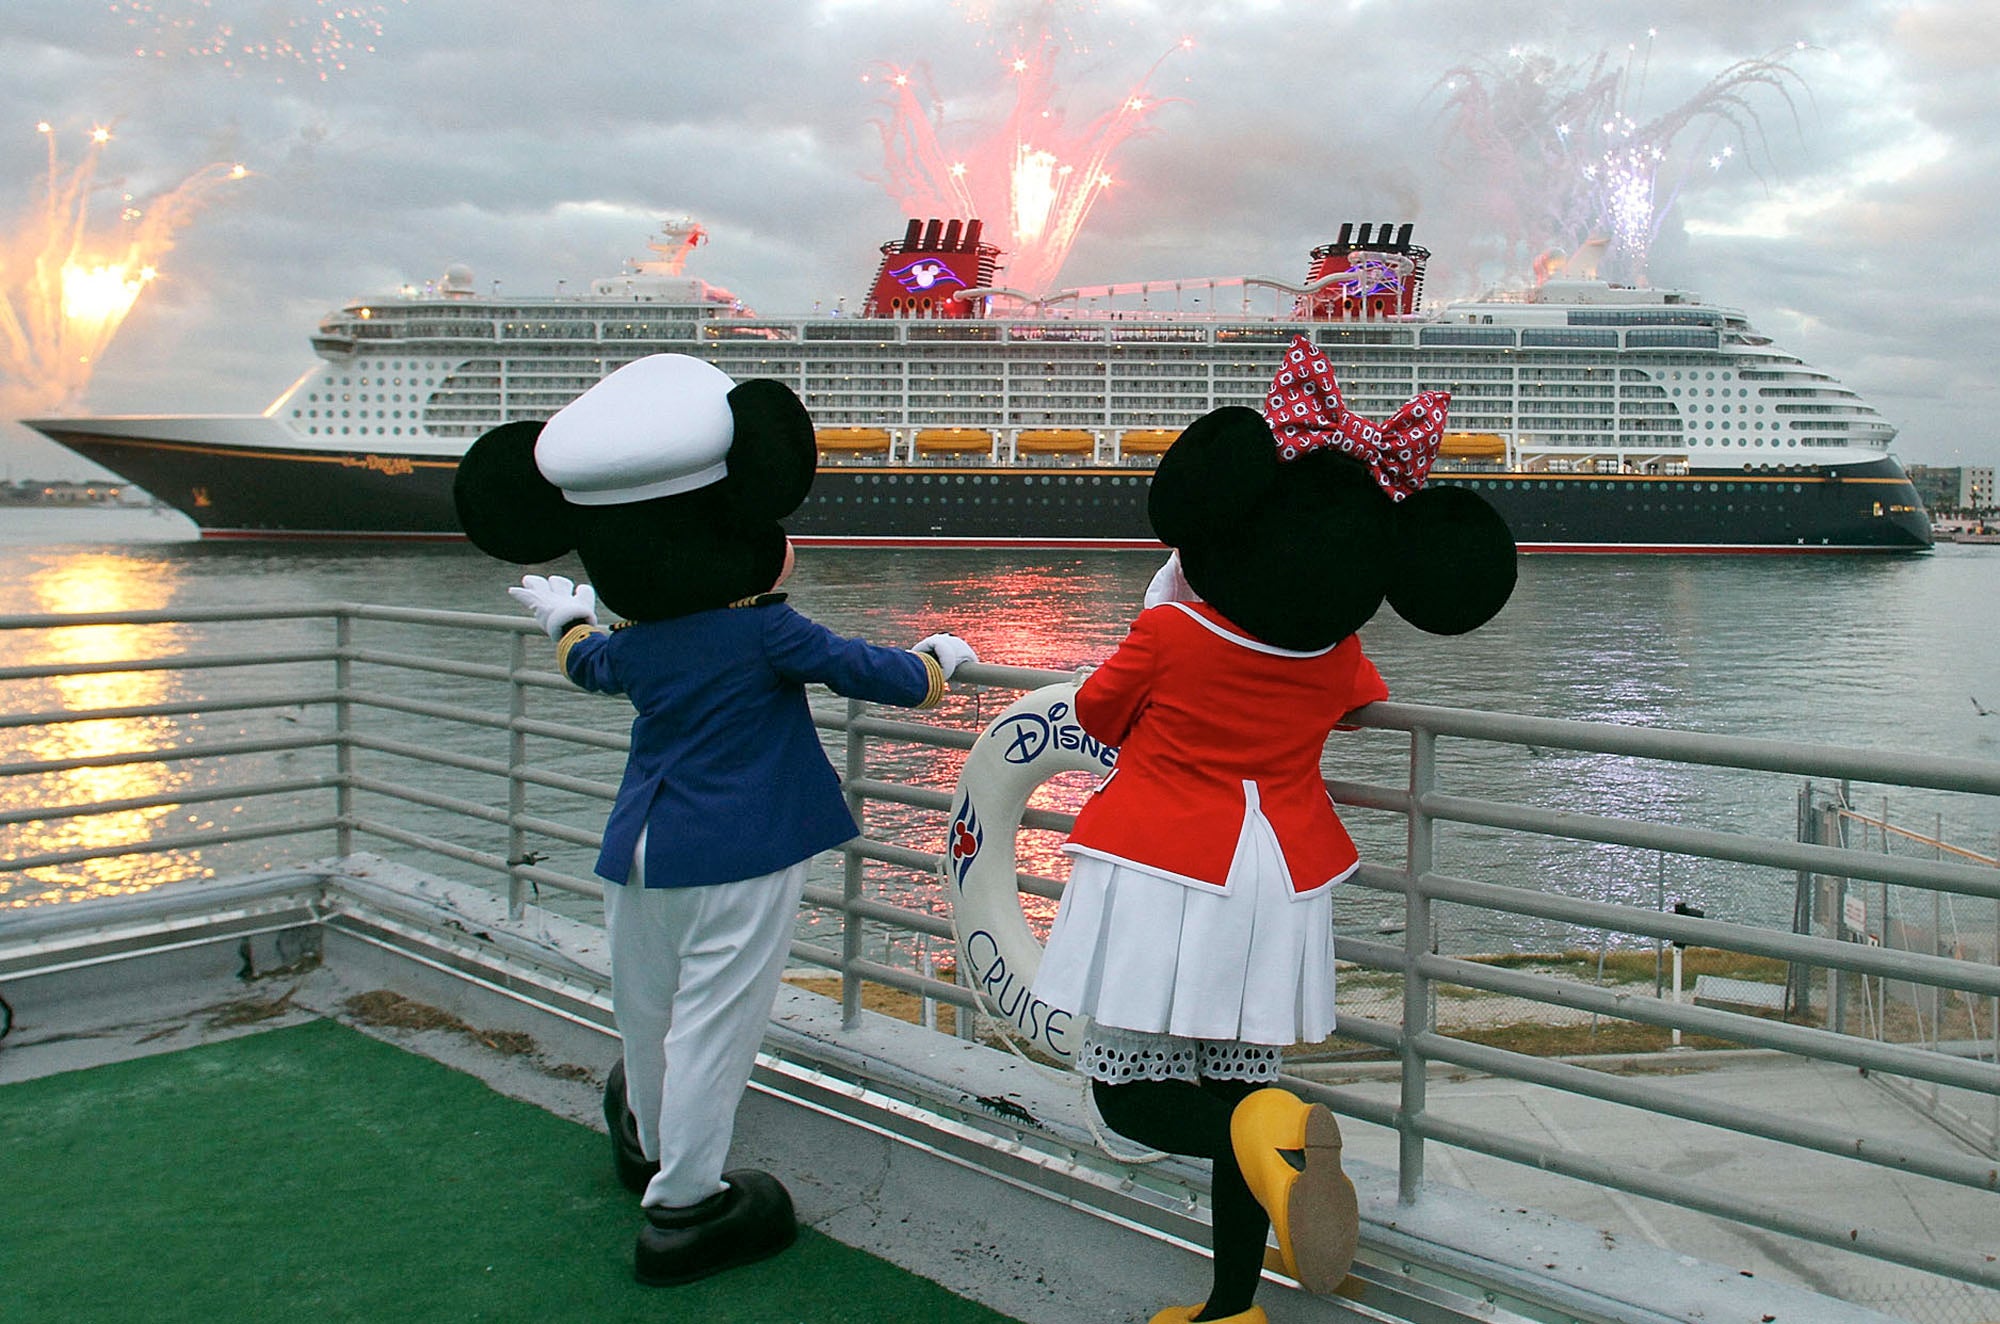 Disney Dream at Port Canaveral, Florida